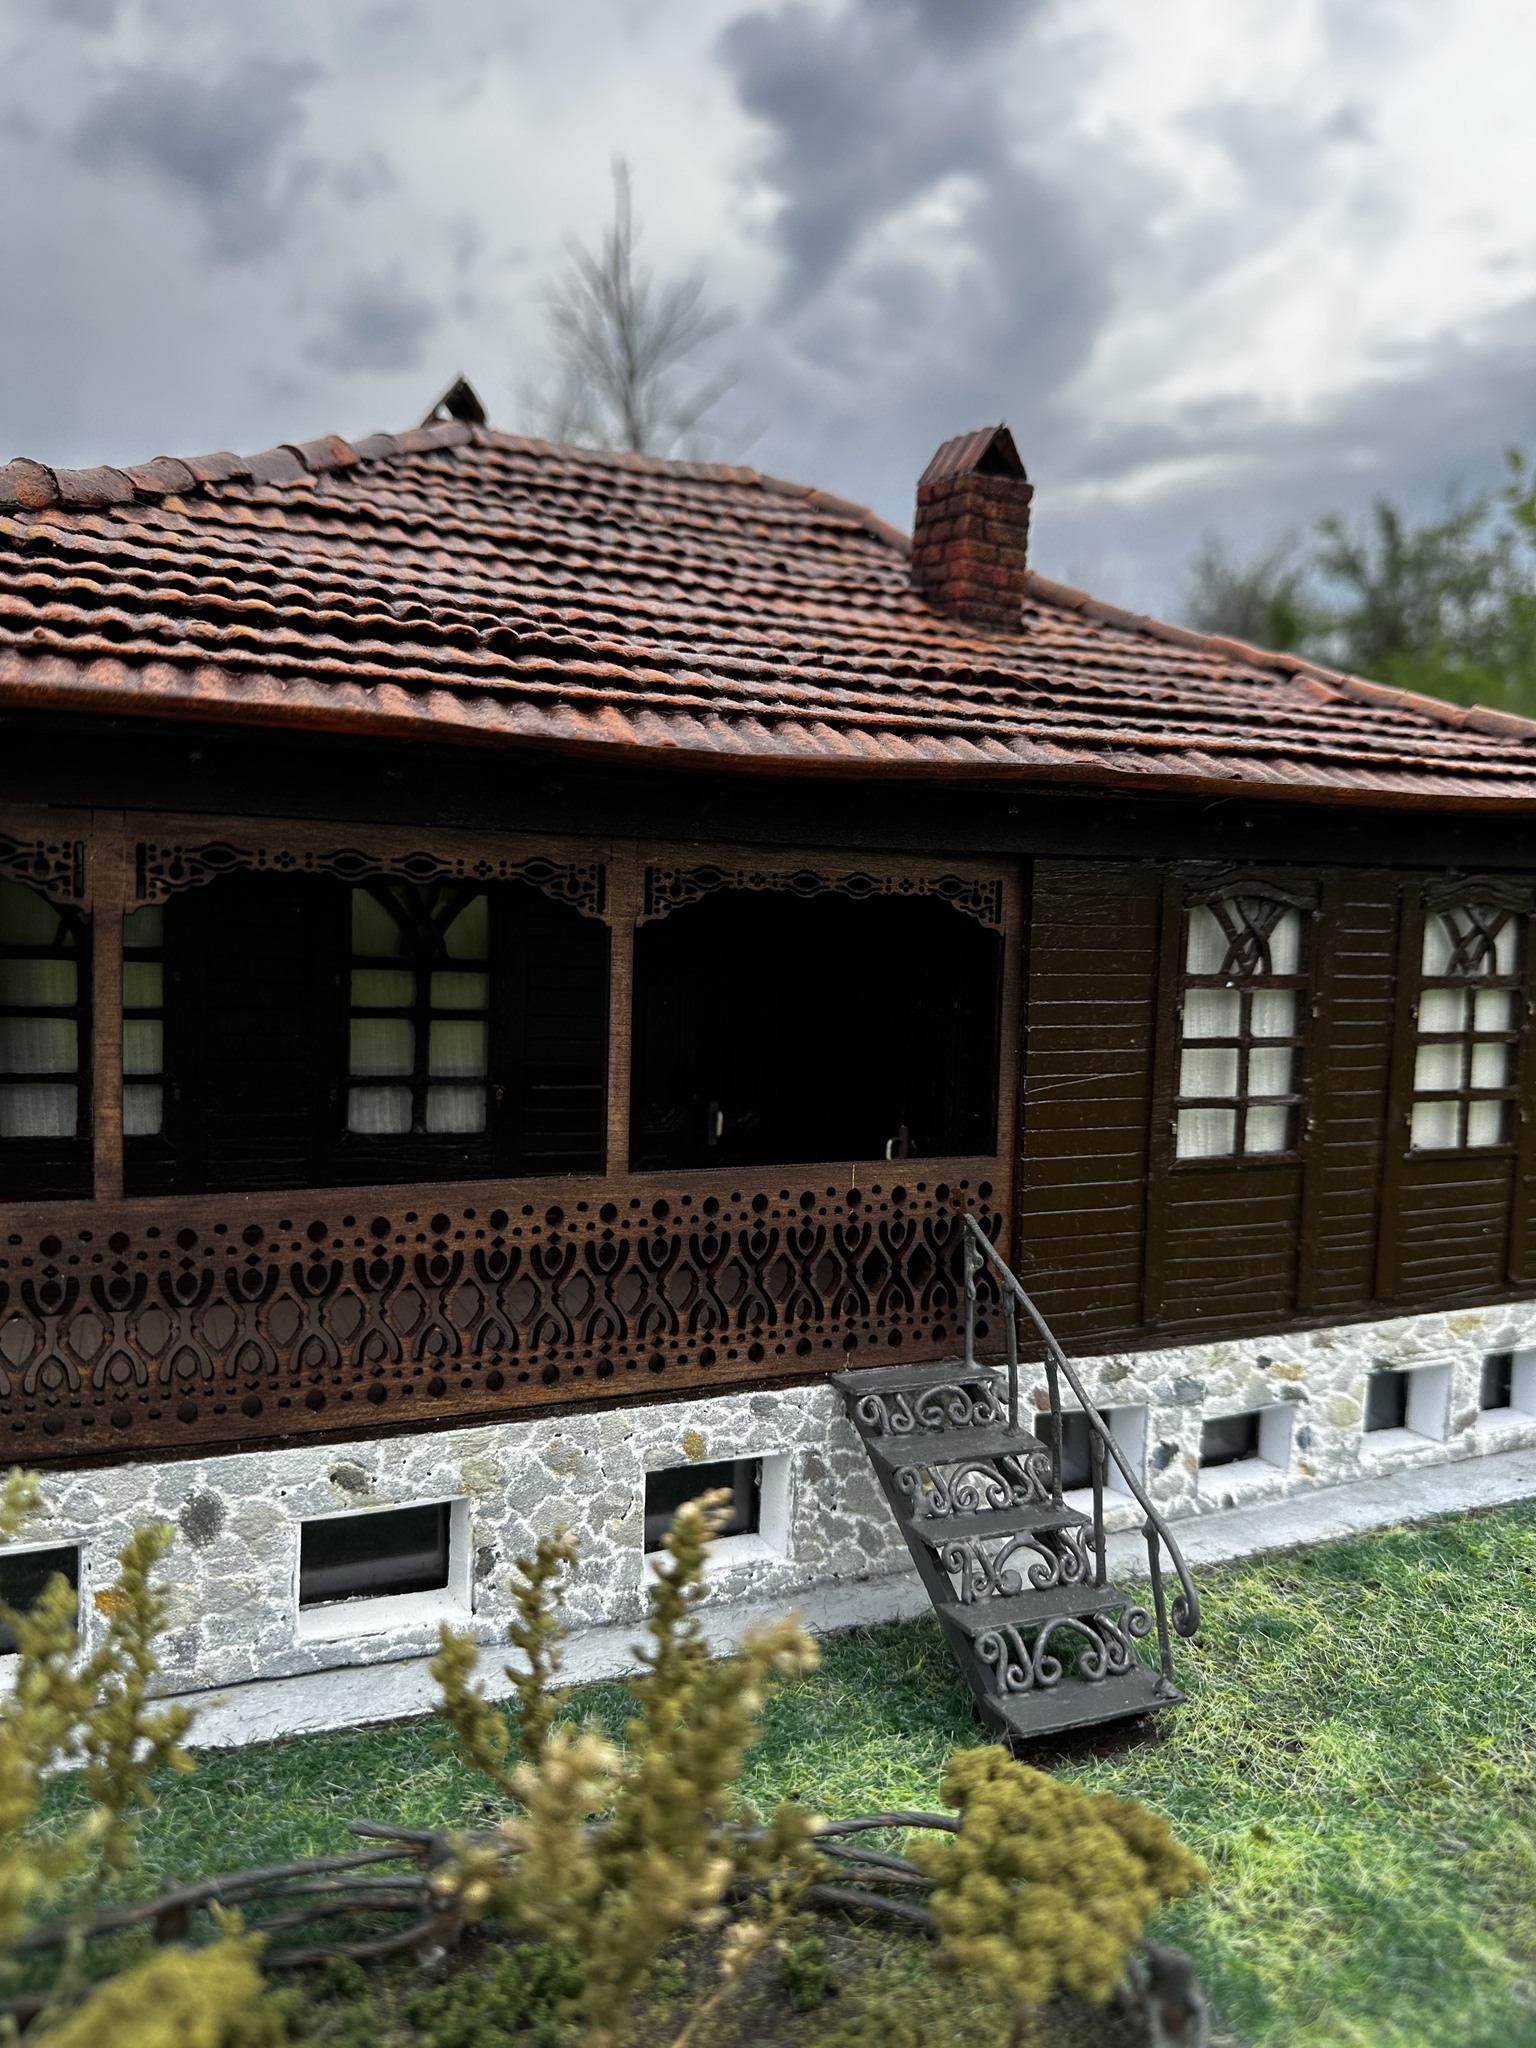 Guria's house